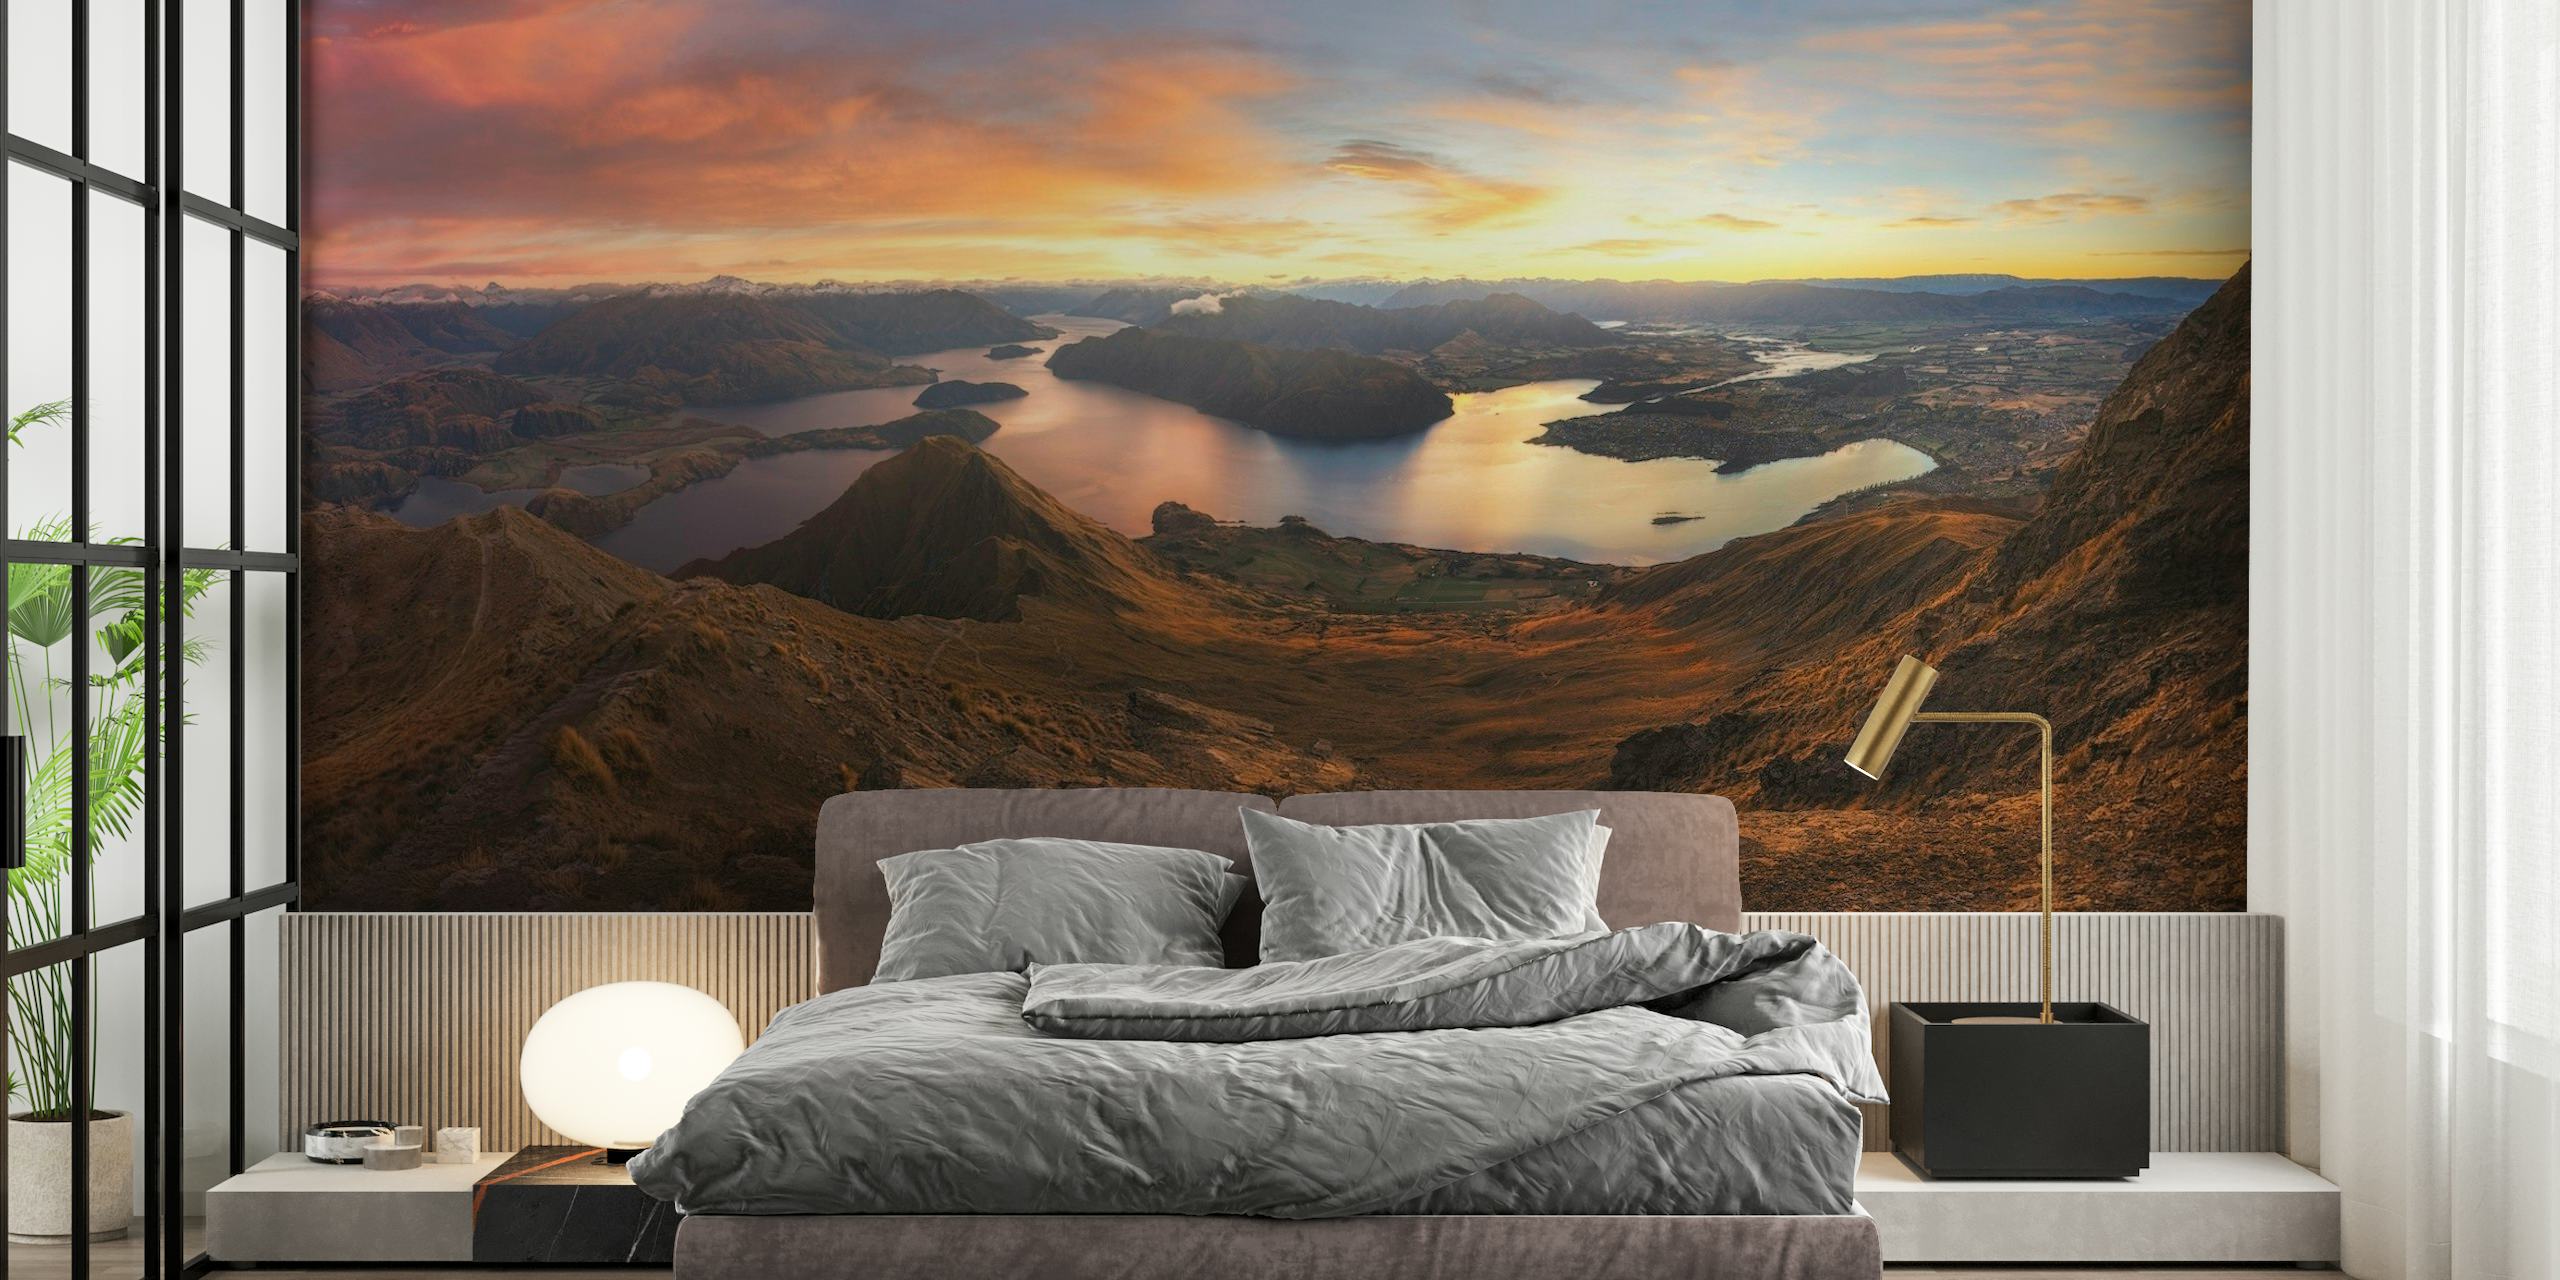 Roys Peak Panorama View tapet med soluppgång över en fridfull sjö och karga berg.